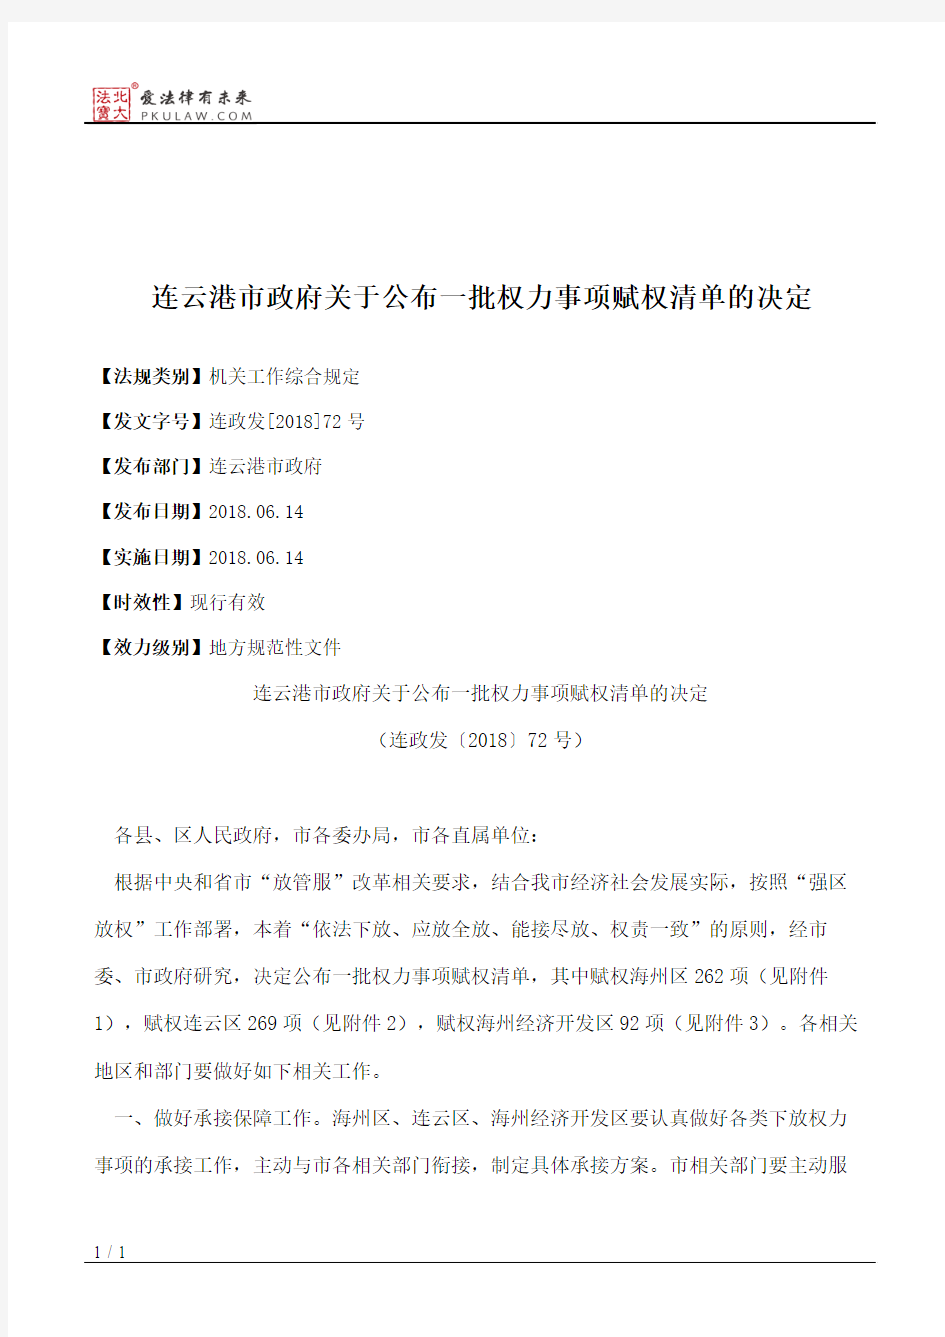 连云港市政府关于公布一批权力事项赋权清单的决定